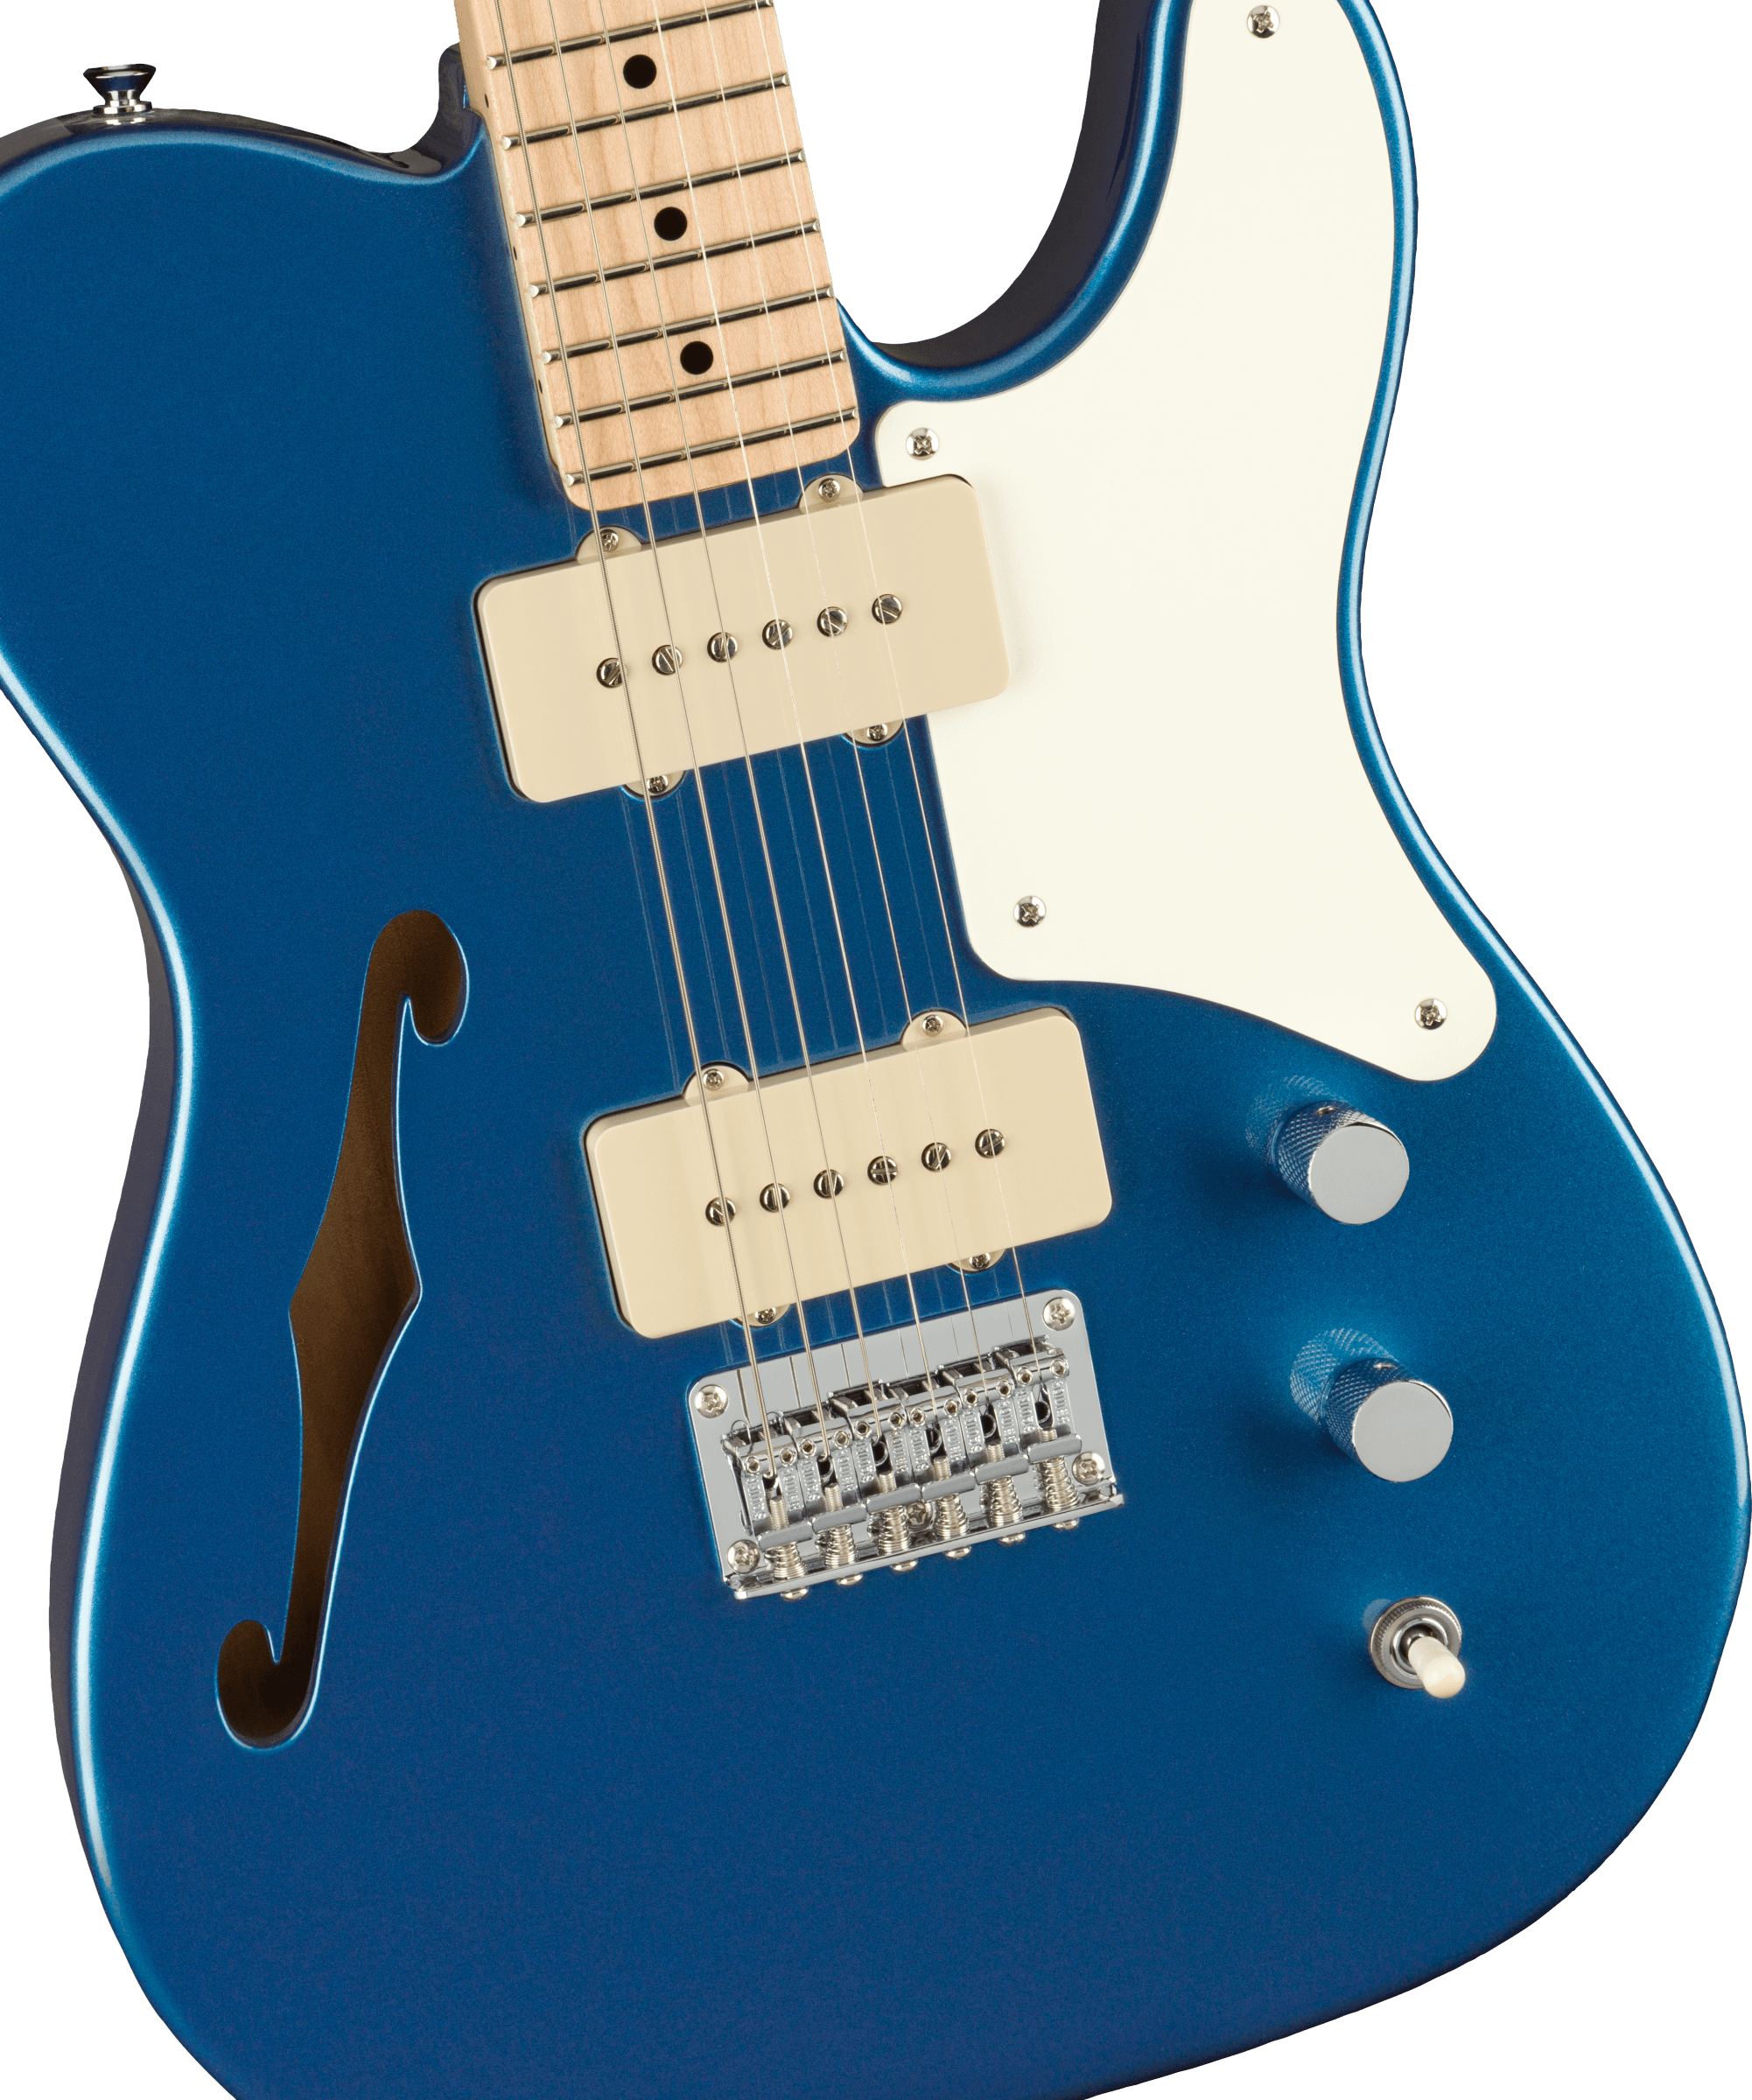 Squier Tele Cabronita Thinline Paranormal Ss Ht Mn - Lake Placid Blue - Guitarra eléctrica con forma de tel - Variation 2